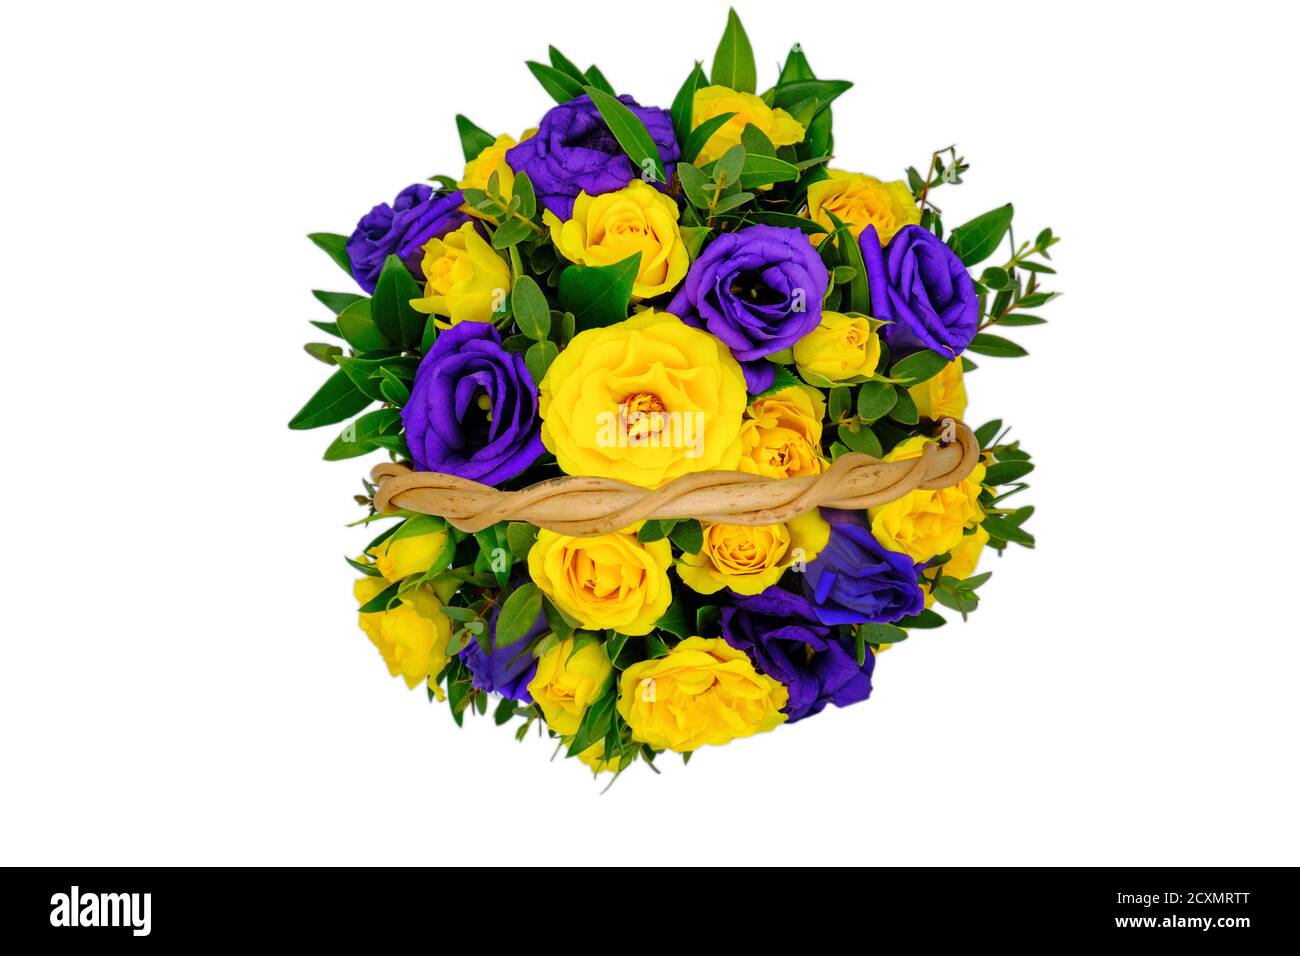 Panier avec fleurs jaunes et bleues sur fond blanc isolé. Vue de dessus d'un bouquet de roses jaunes et violettes. Belles fleurs dans un bak en osier Banque D'Images